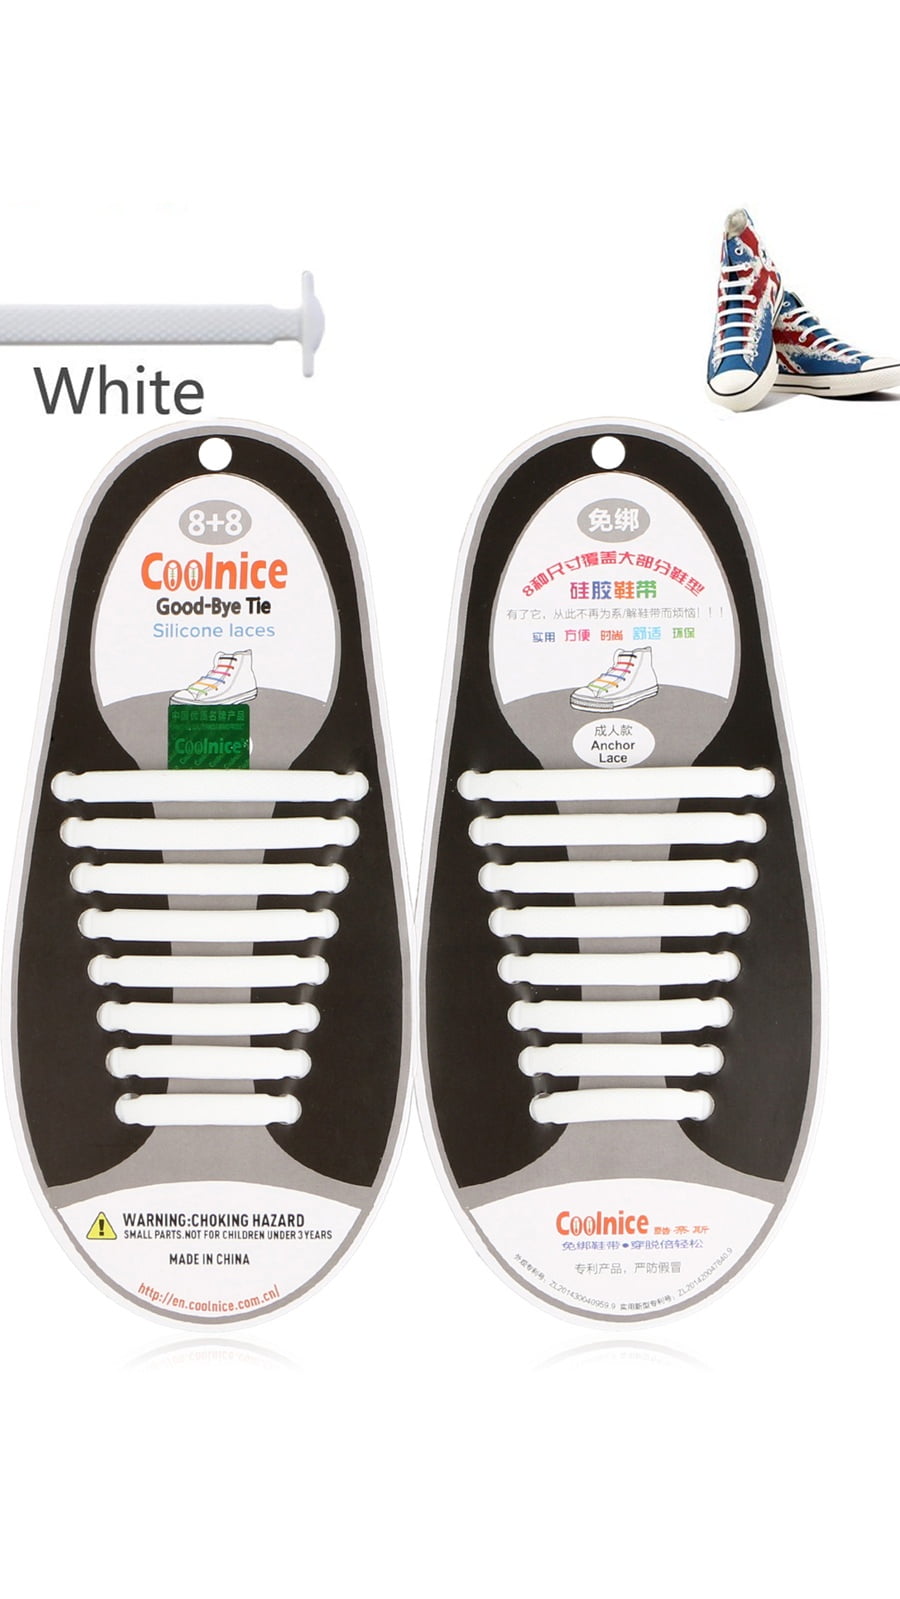 white shoelaces walmart